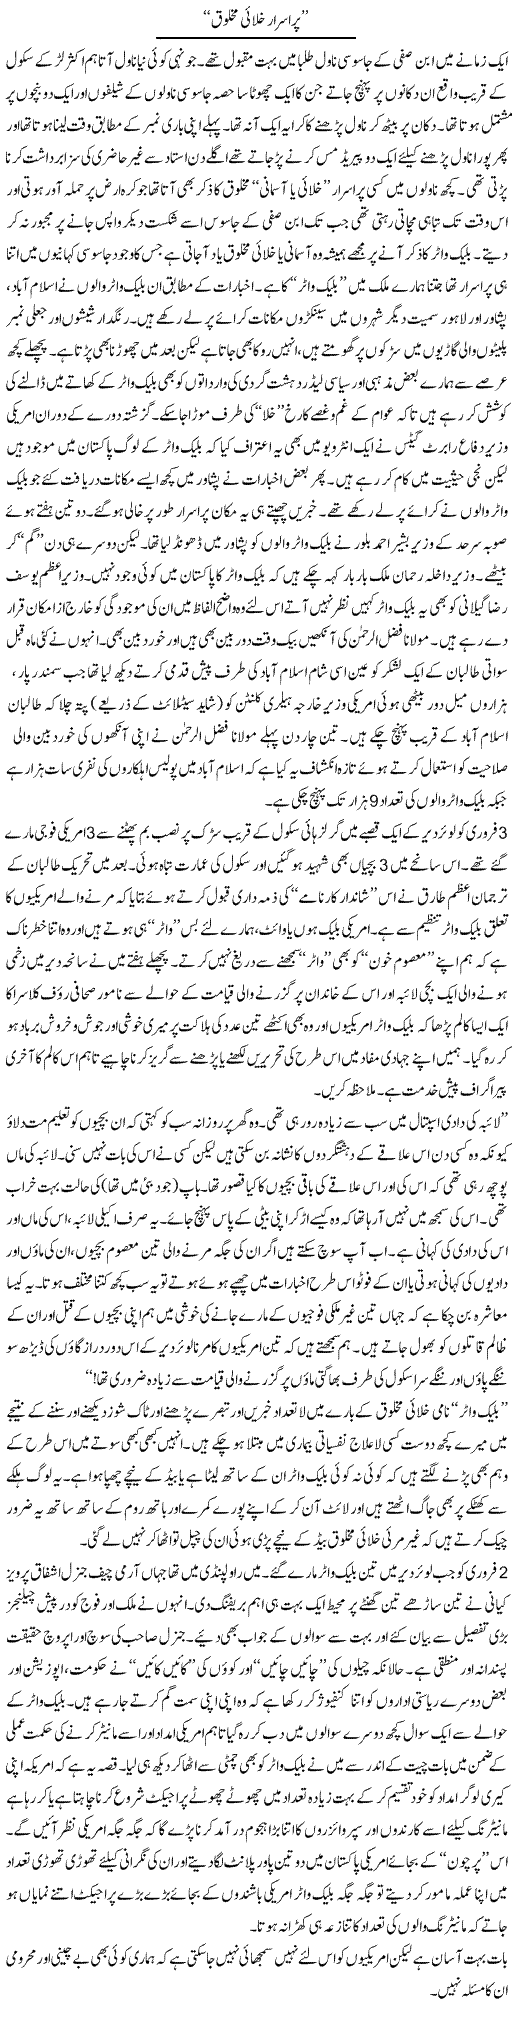 Purisrar makhlooq Express Column Abbas Athar 13 Feb 2010